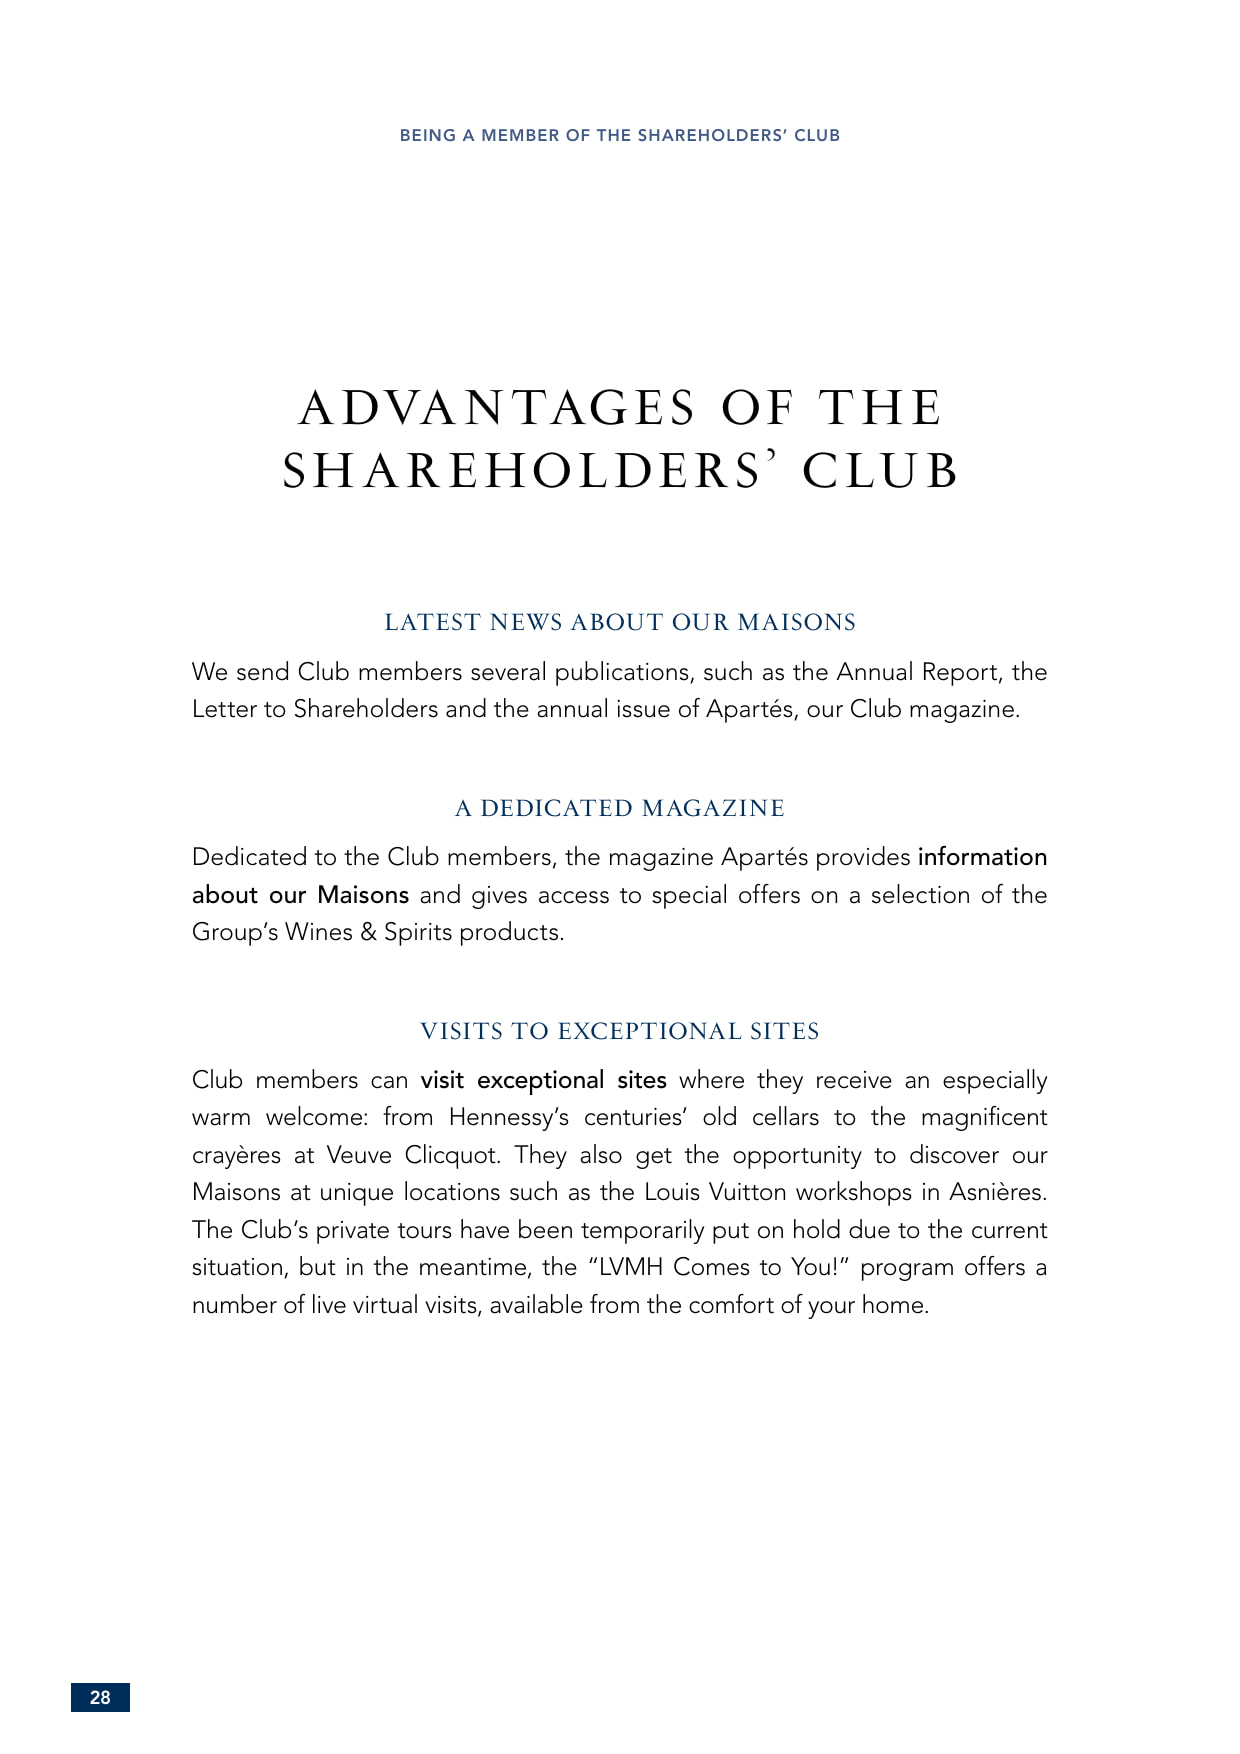 LVMH - The 2021 Shareholders' Guide